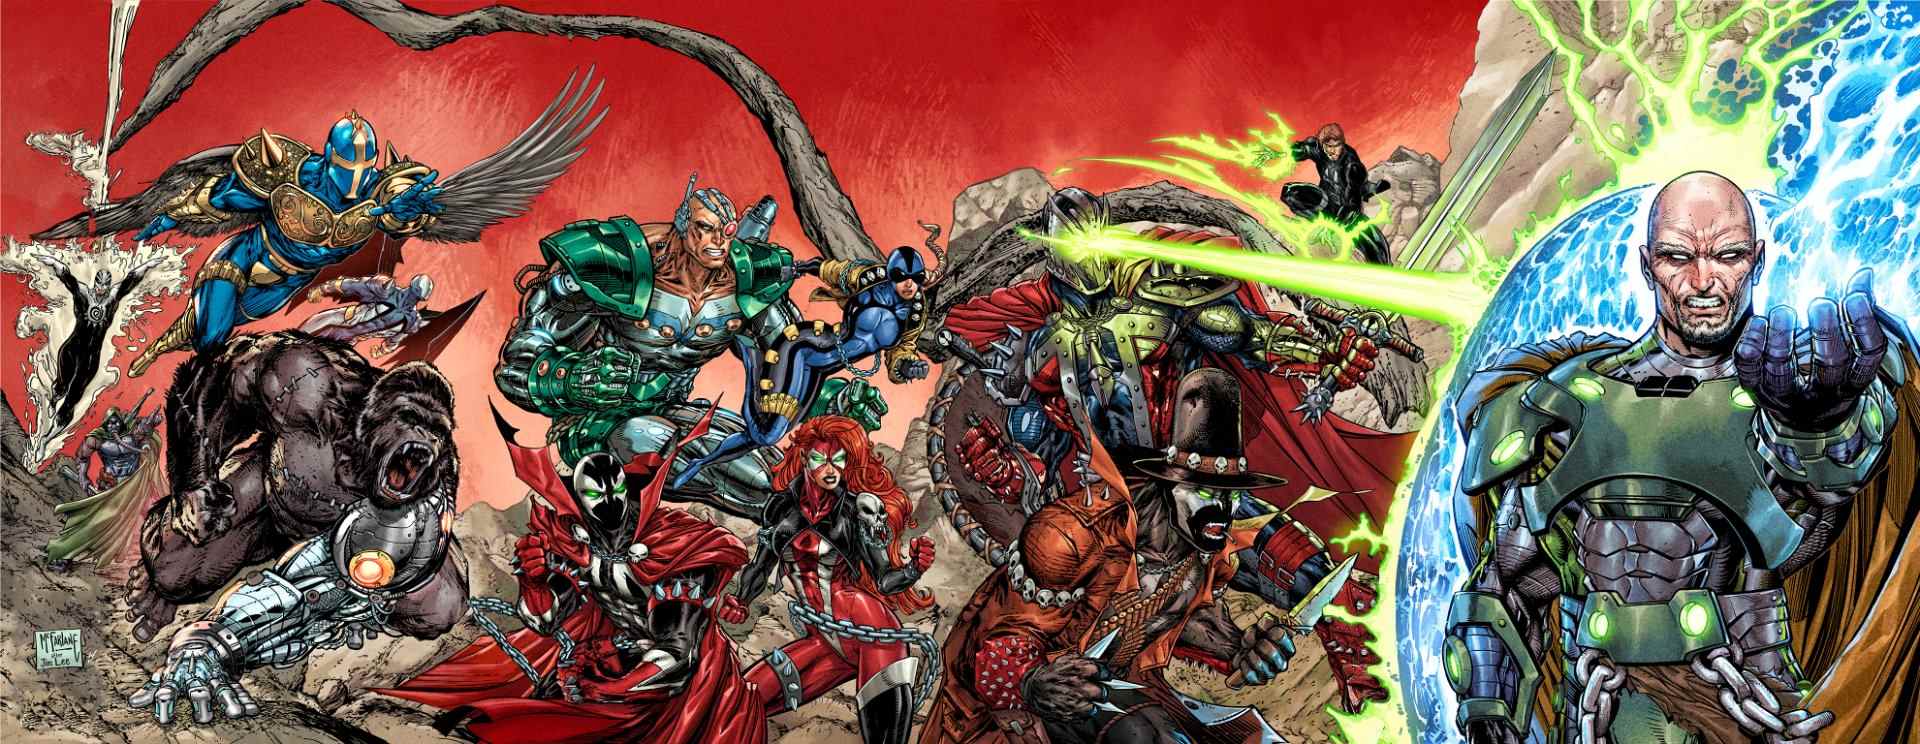 Scorched # 3-6 X-Men # 1 couvertures d'hommage variantes